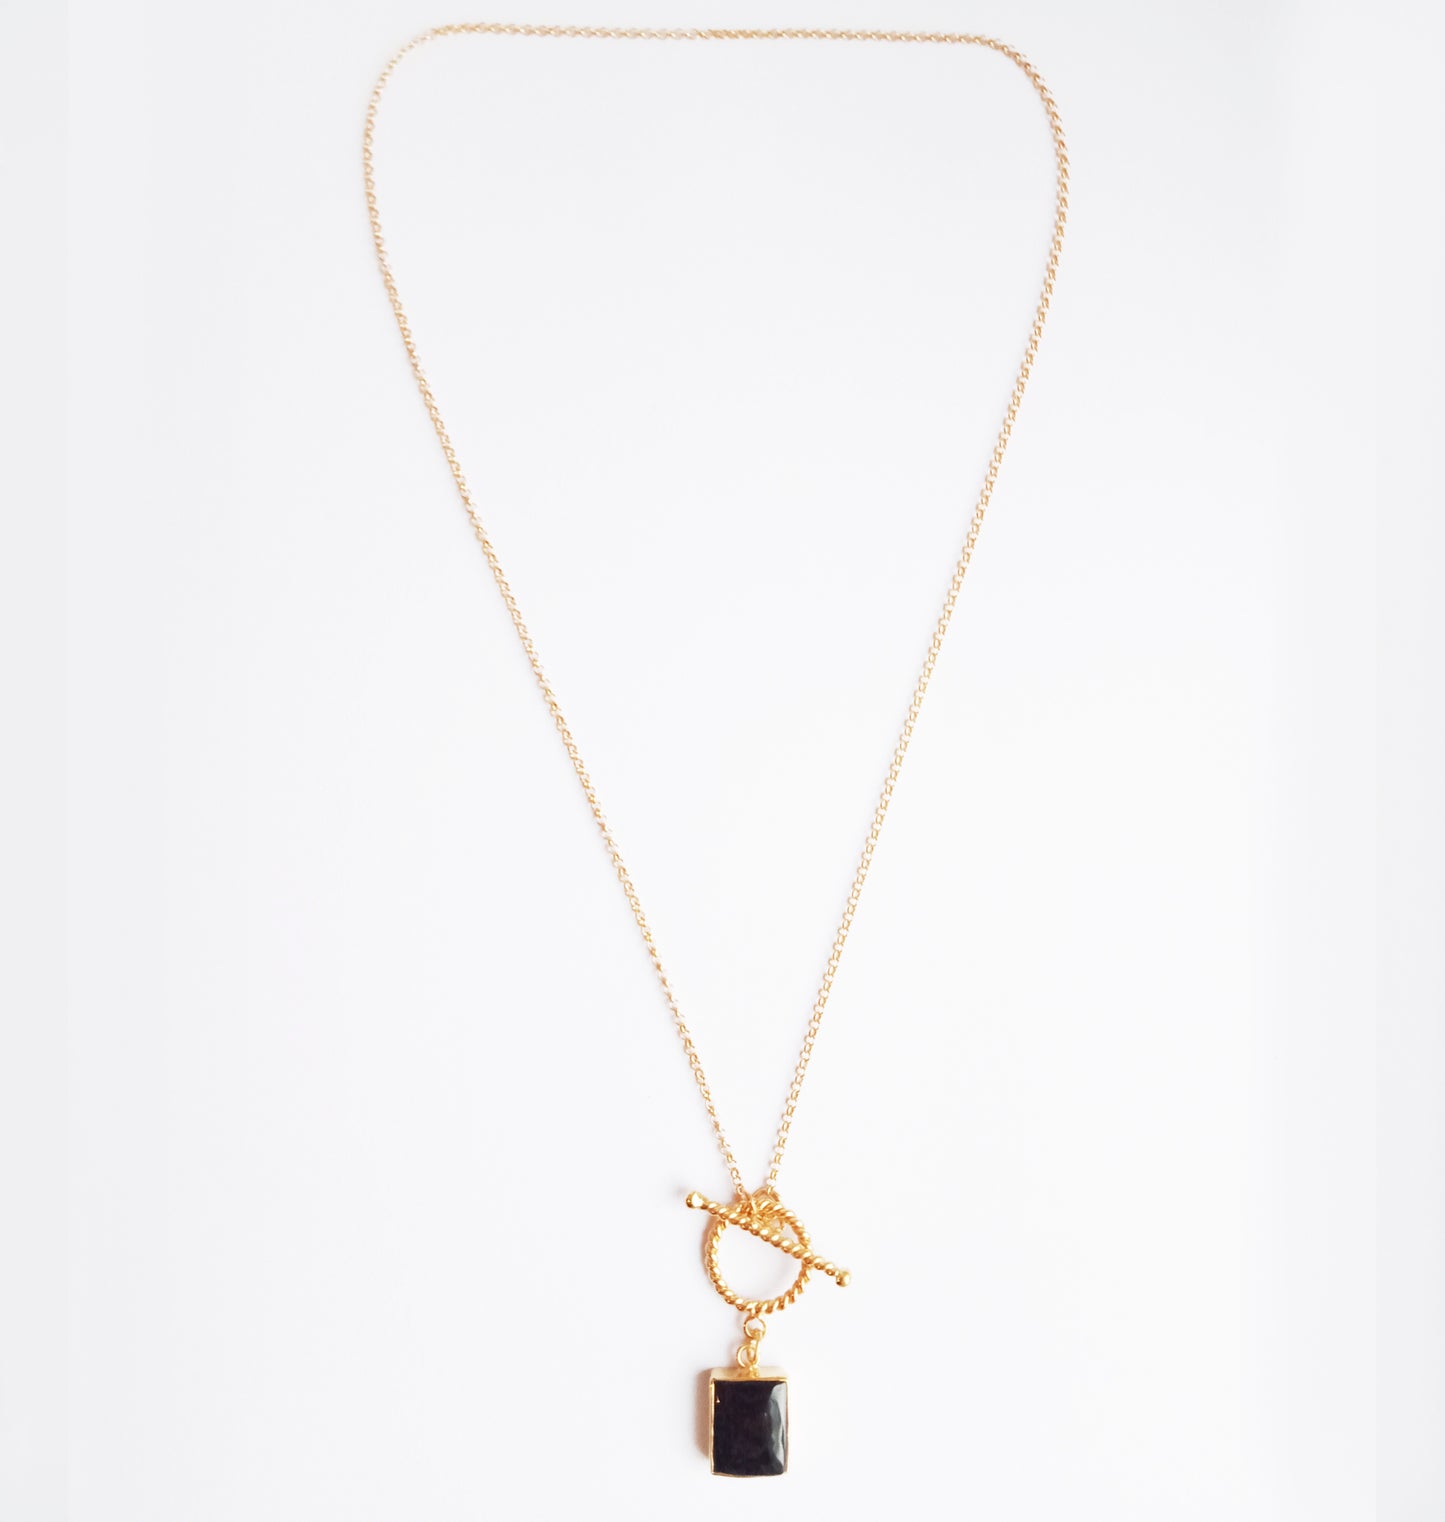 Black Onyx Gemstone Toggle Necklace